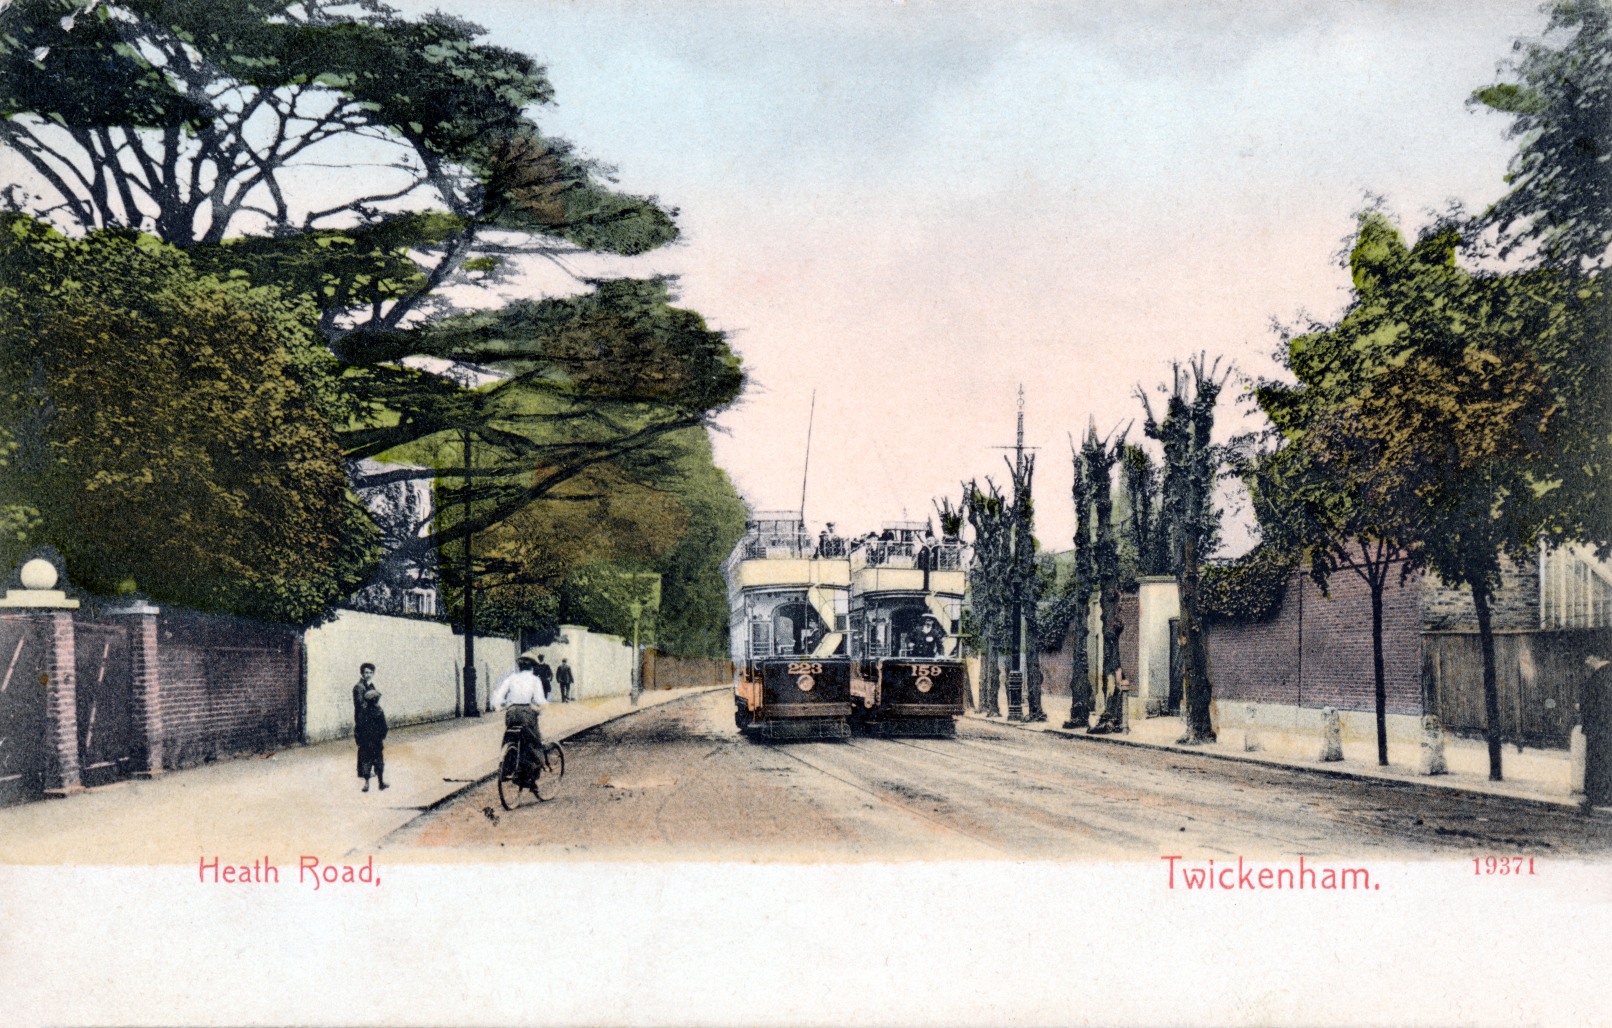 Twickenham,street-townscape,trams,lady cyclist